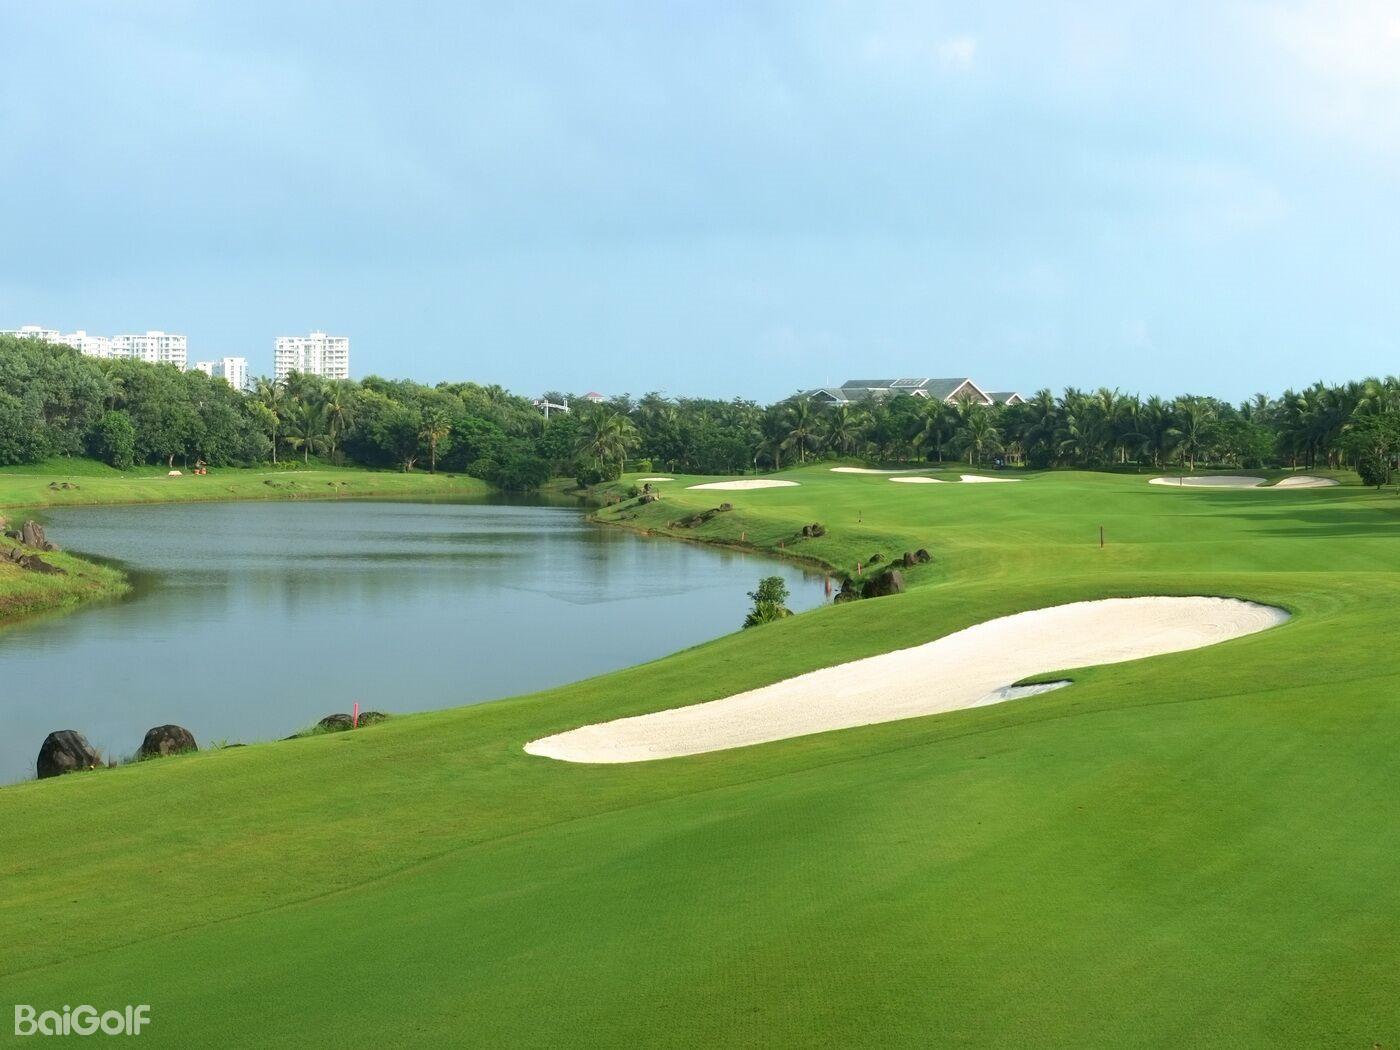 海南西海岸高尔夫球场 | 百高（BaiGolf） - 高尔夫球场预订,高尔夫旅游,日本高尔夫,泰国高尔夫,越南高尔夫,中国,韩国,亚洲及太平洋高尔夫